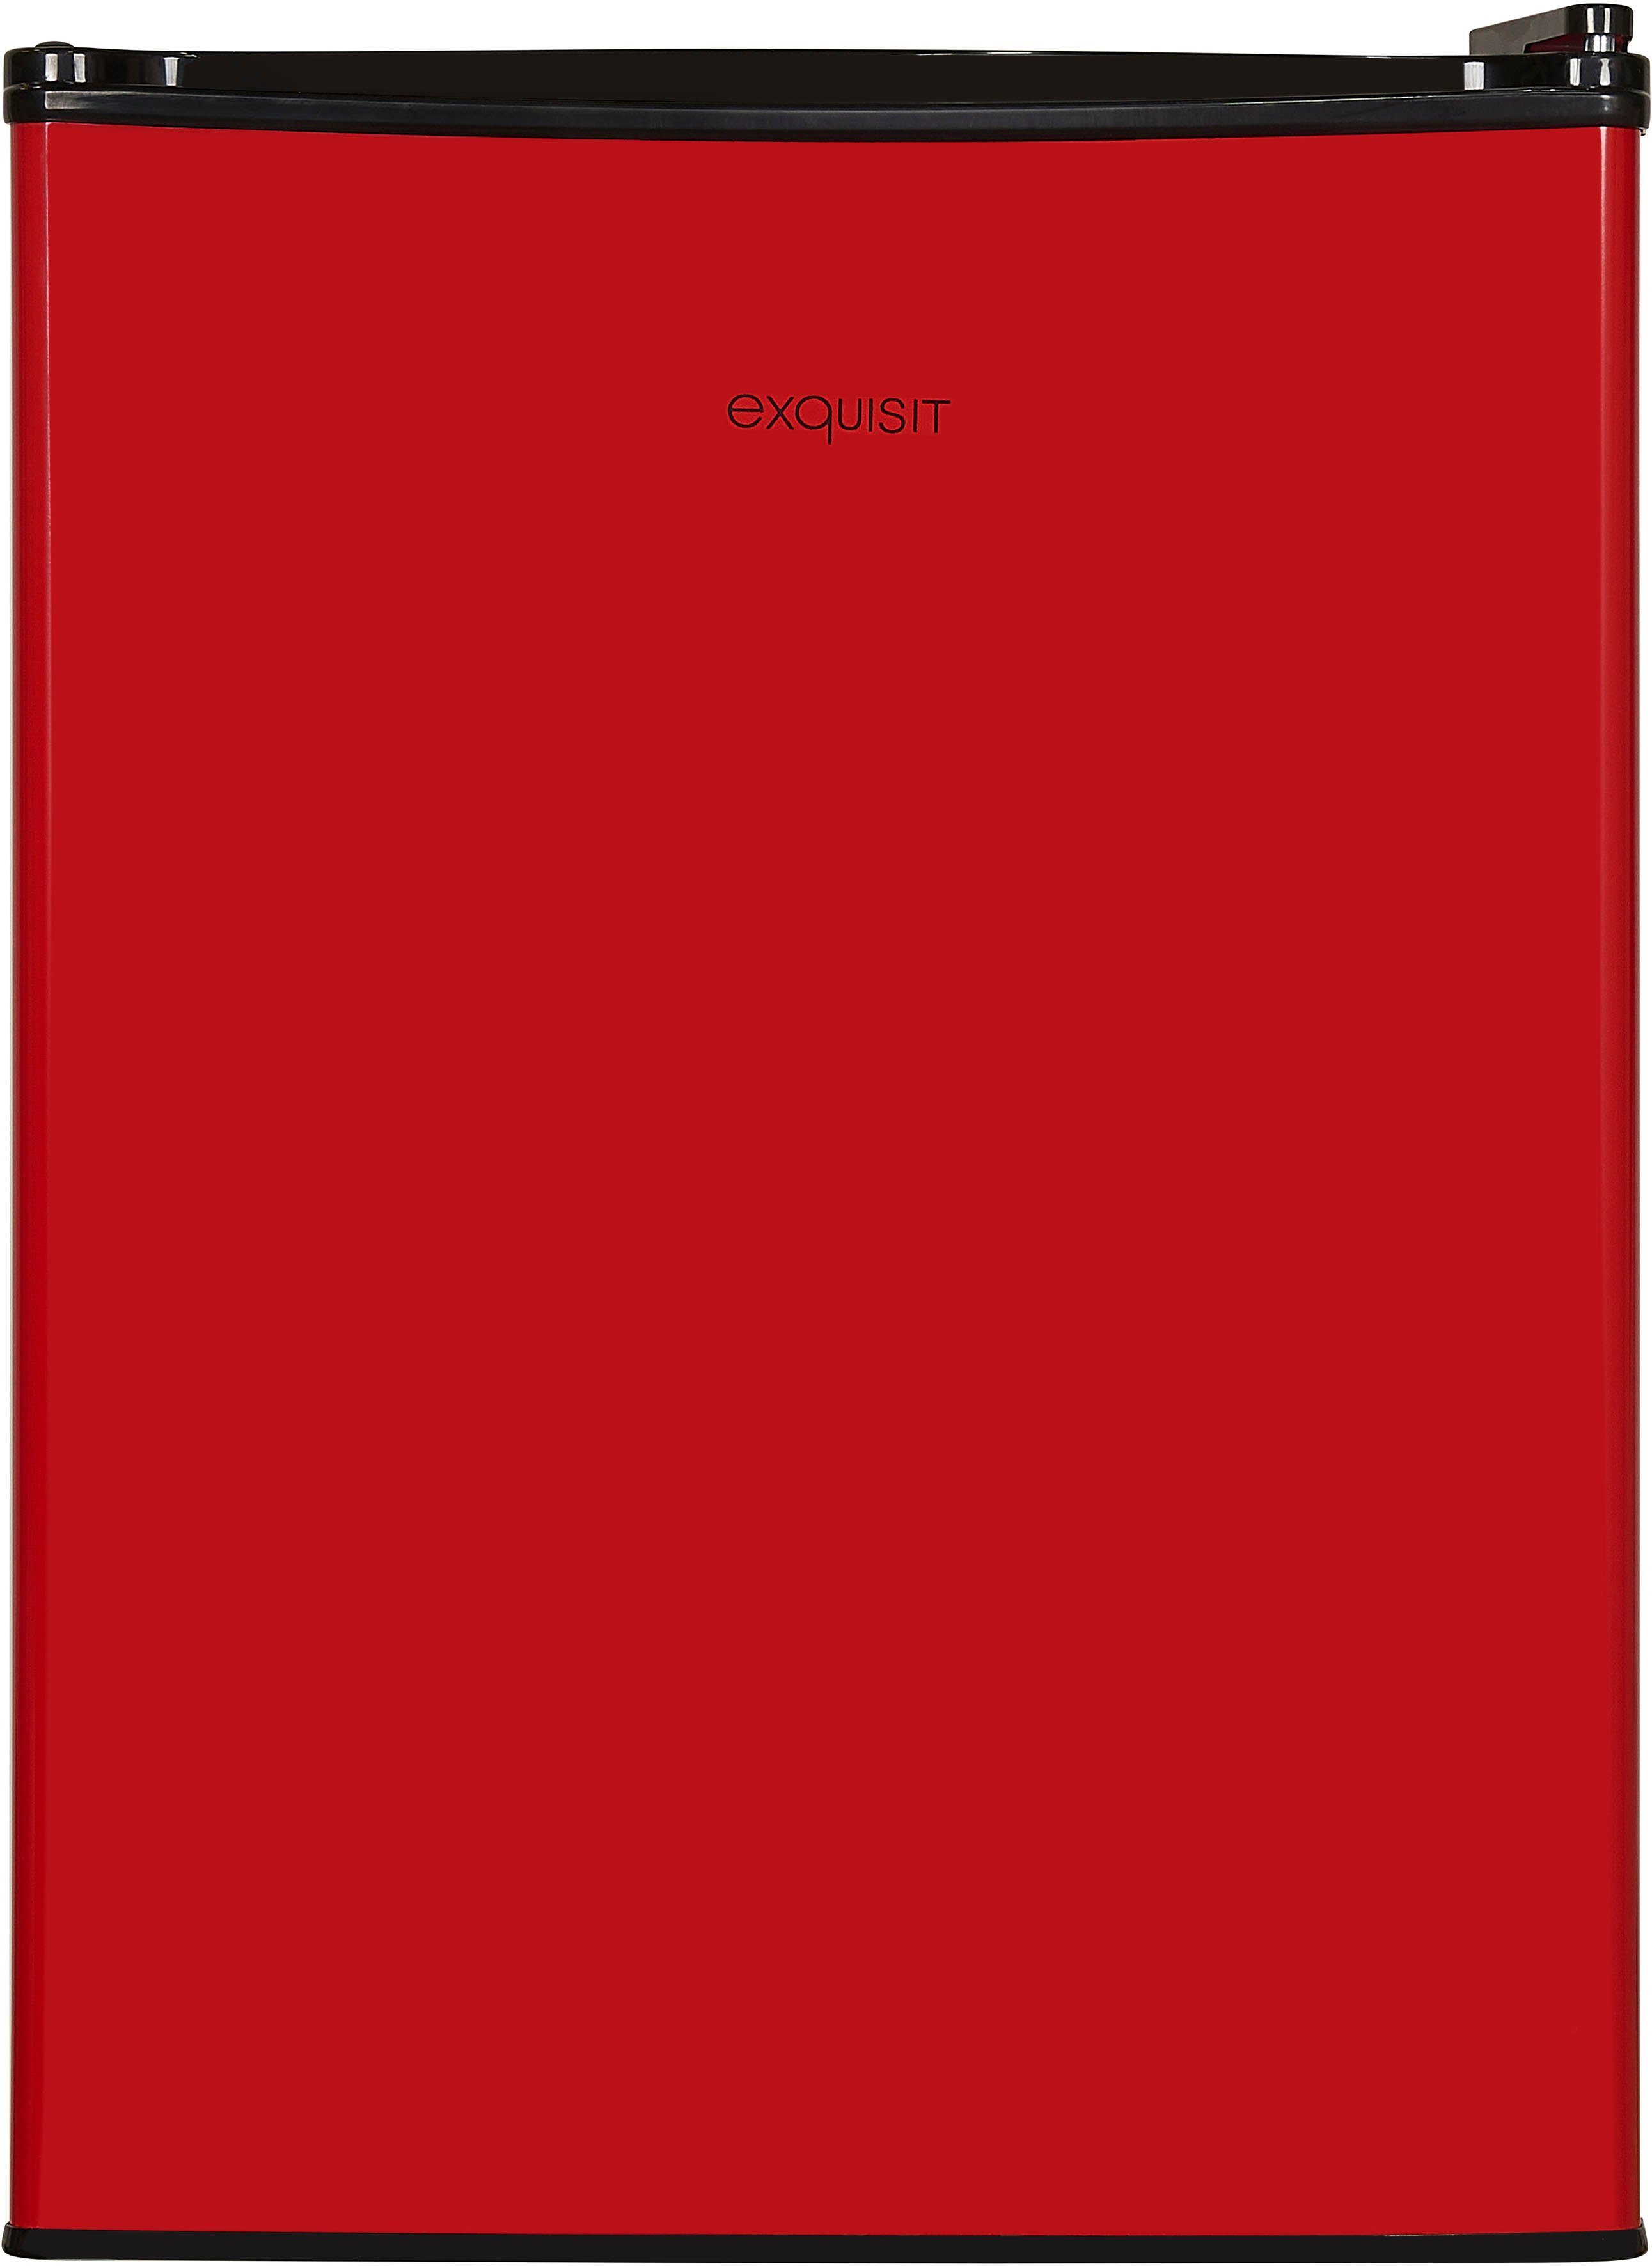 exquisit Kühlschrank KB60-V-090E breit hoch, rot, 62 45 cm cm